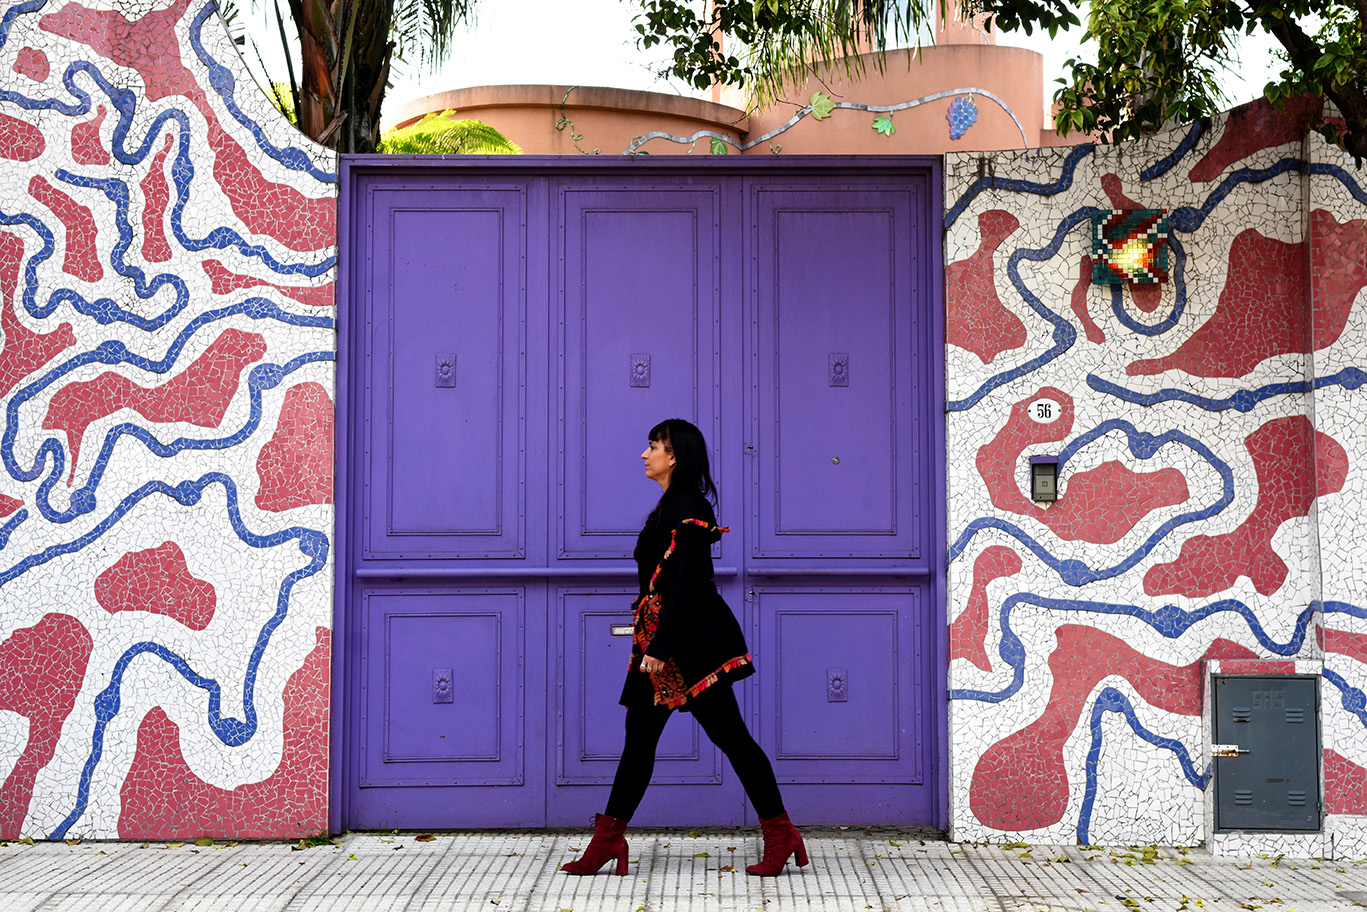 Sofia Rei in front of a purple door